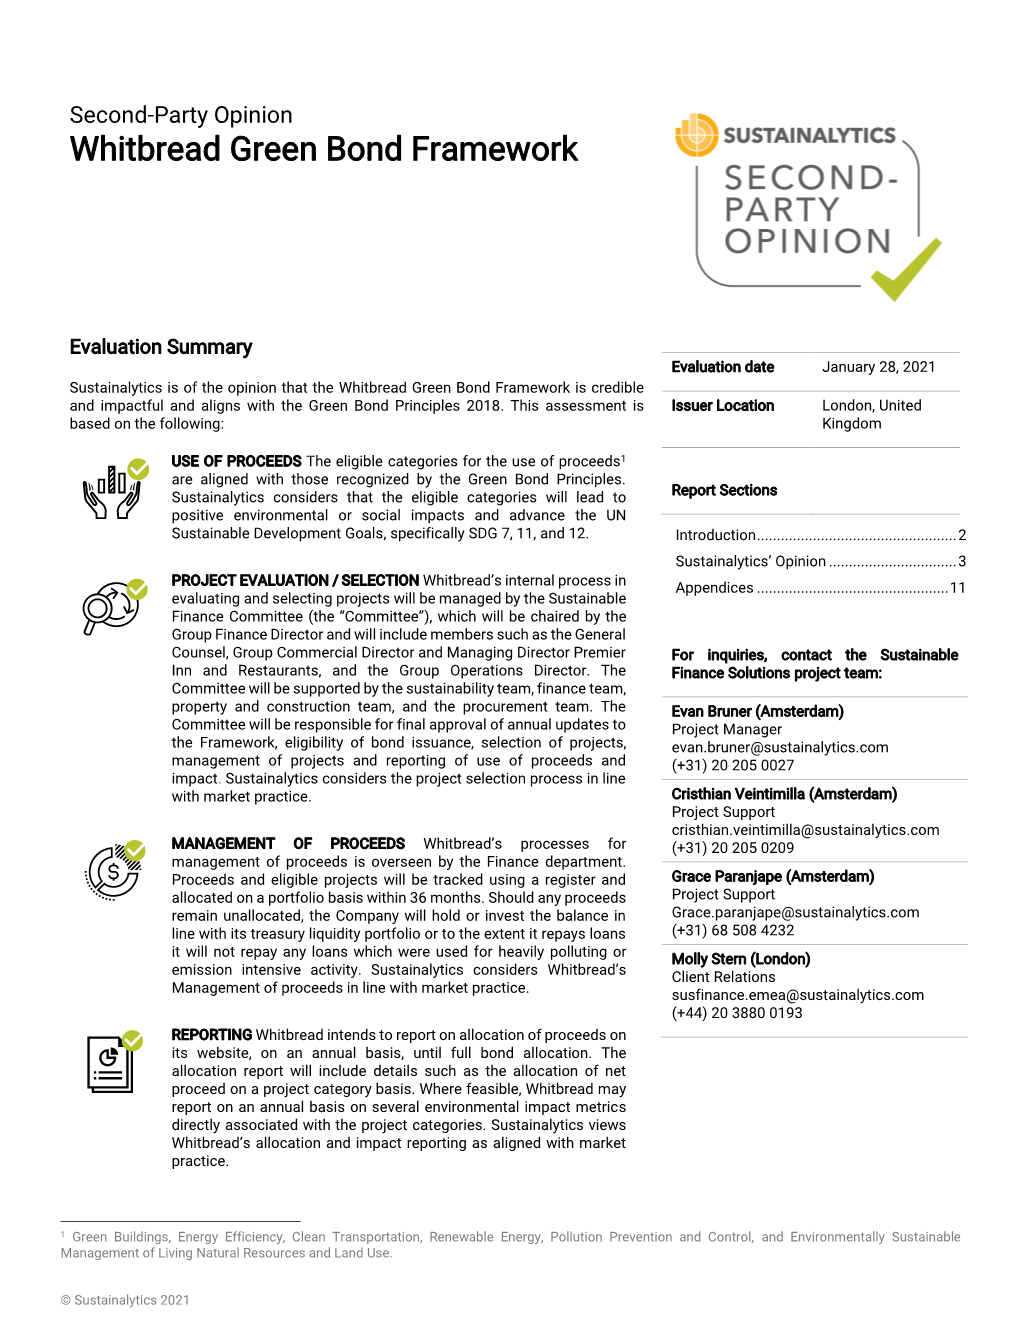 Whitbread Green Bond Framework